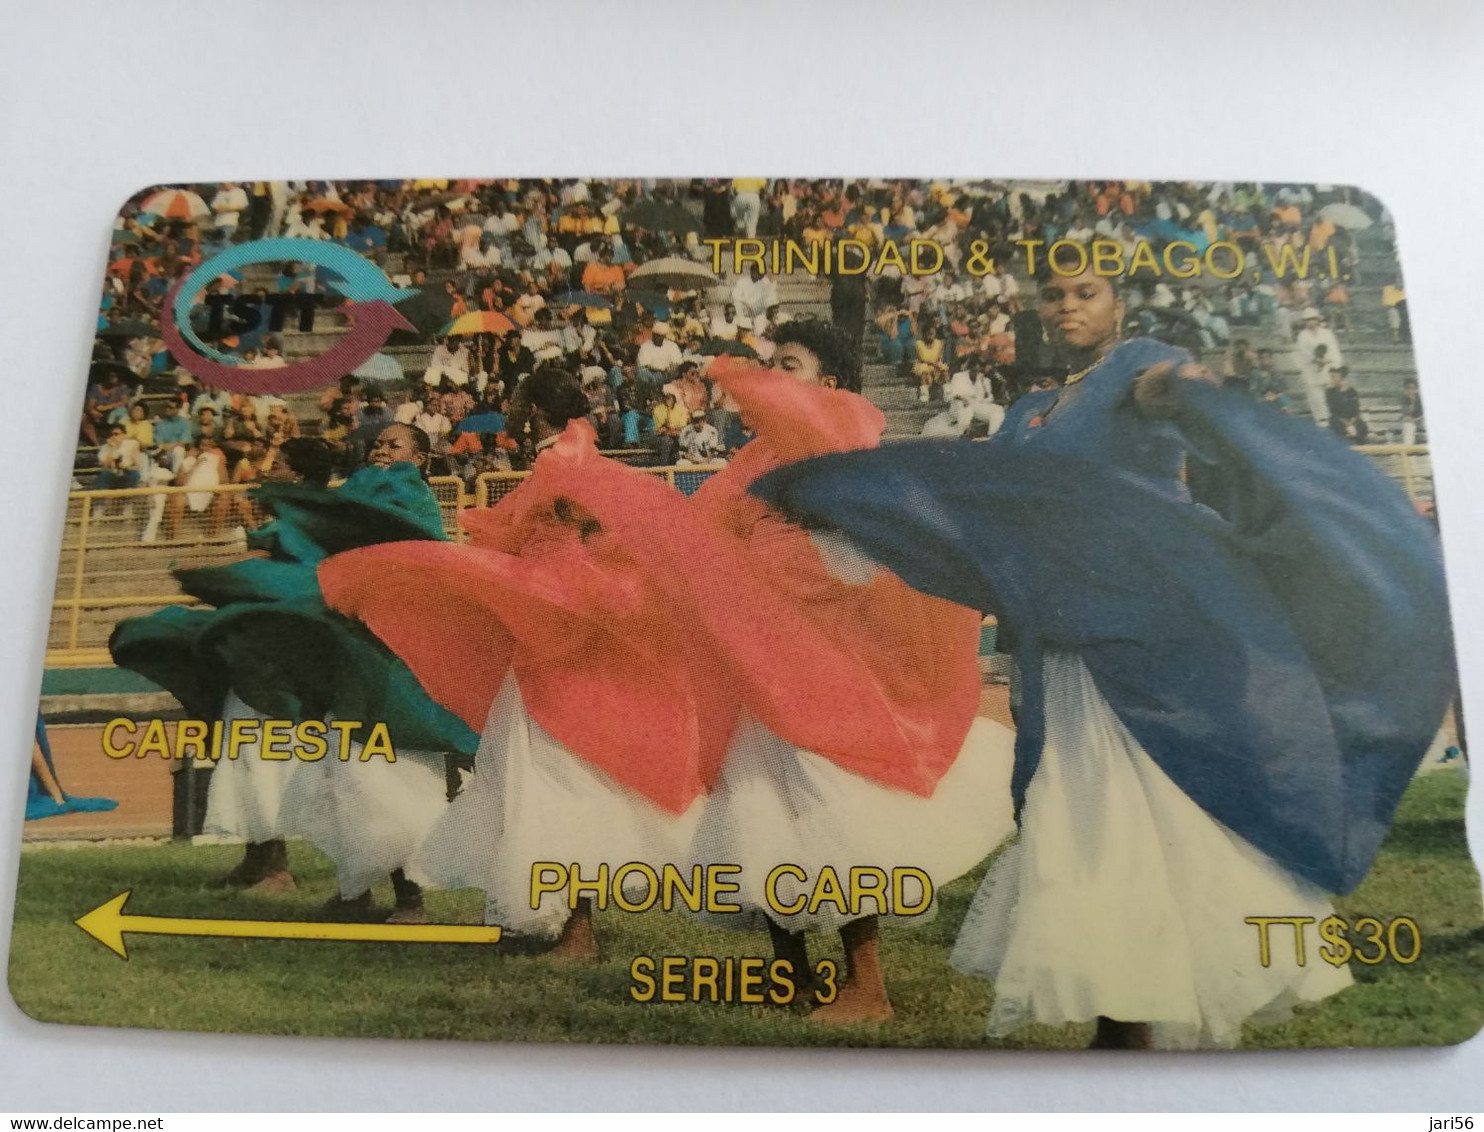 TRINIDAD & TOBAGO  GPT CARD    $30,-  9CCTA  CARIFESTA           Fine Used Card        ** 9589** - Trinidad En Tobago